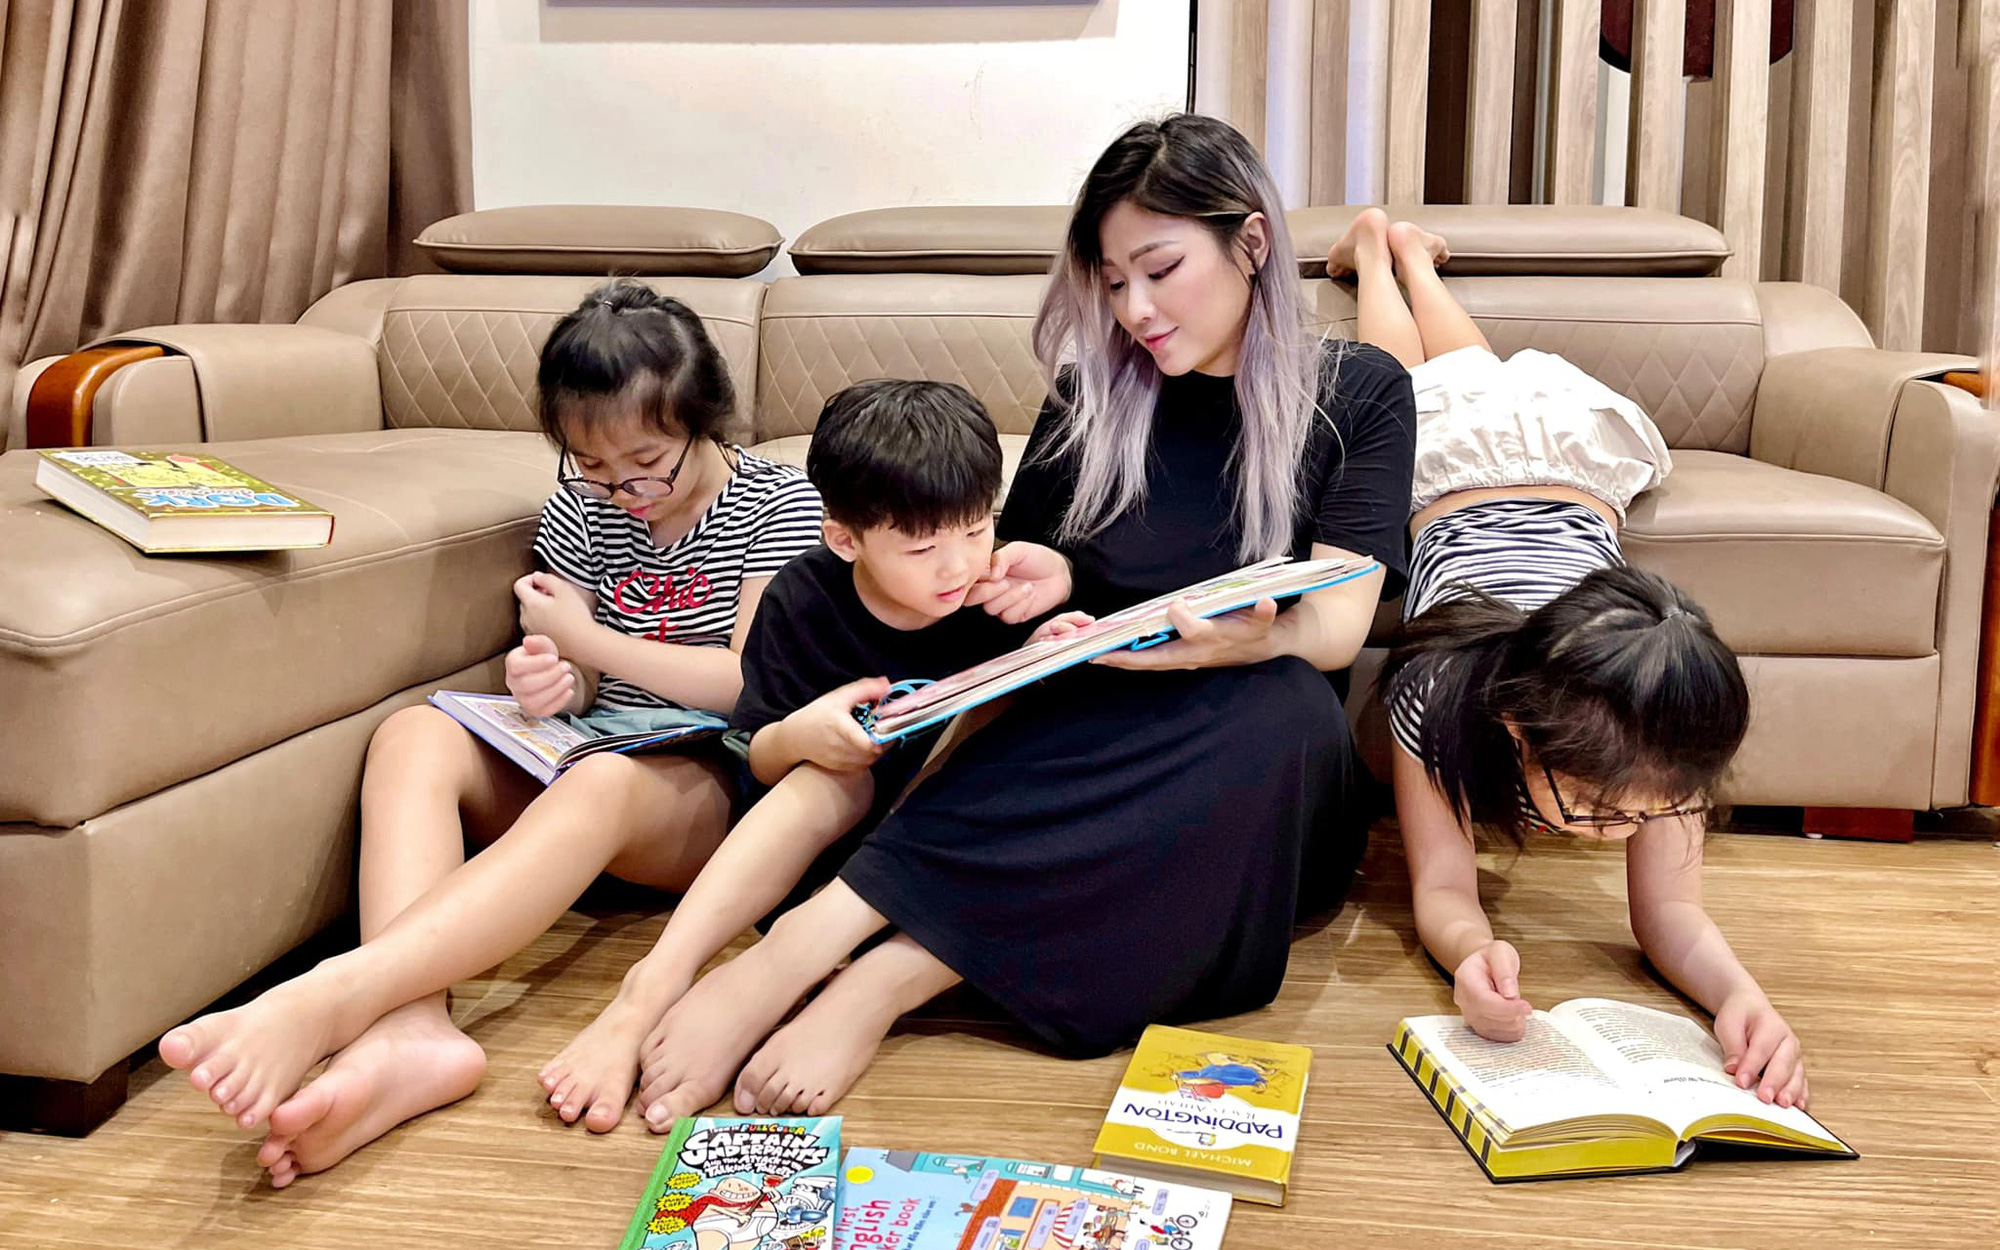 Hot mom Tia Liêu khoe khoảnh khắc yên bình đọc sách bên các con, dân tình trầm trồ khen lũ trẻ bởi một chi tiết nhỏ